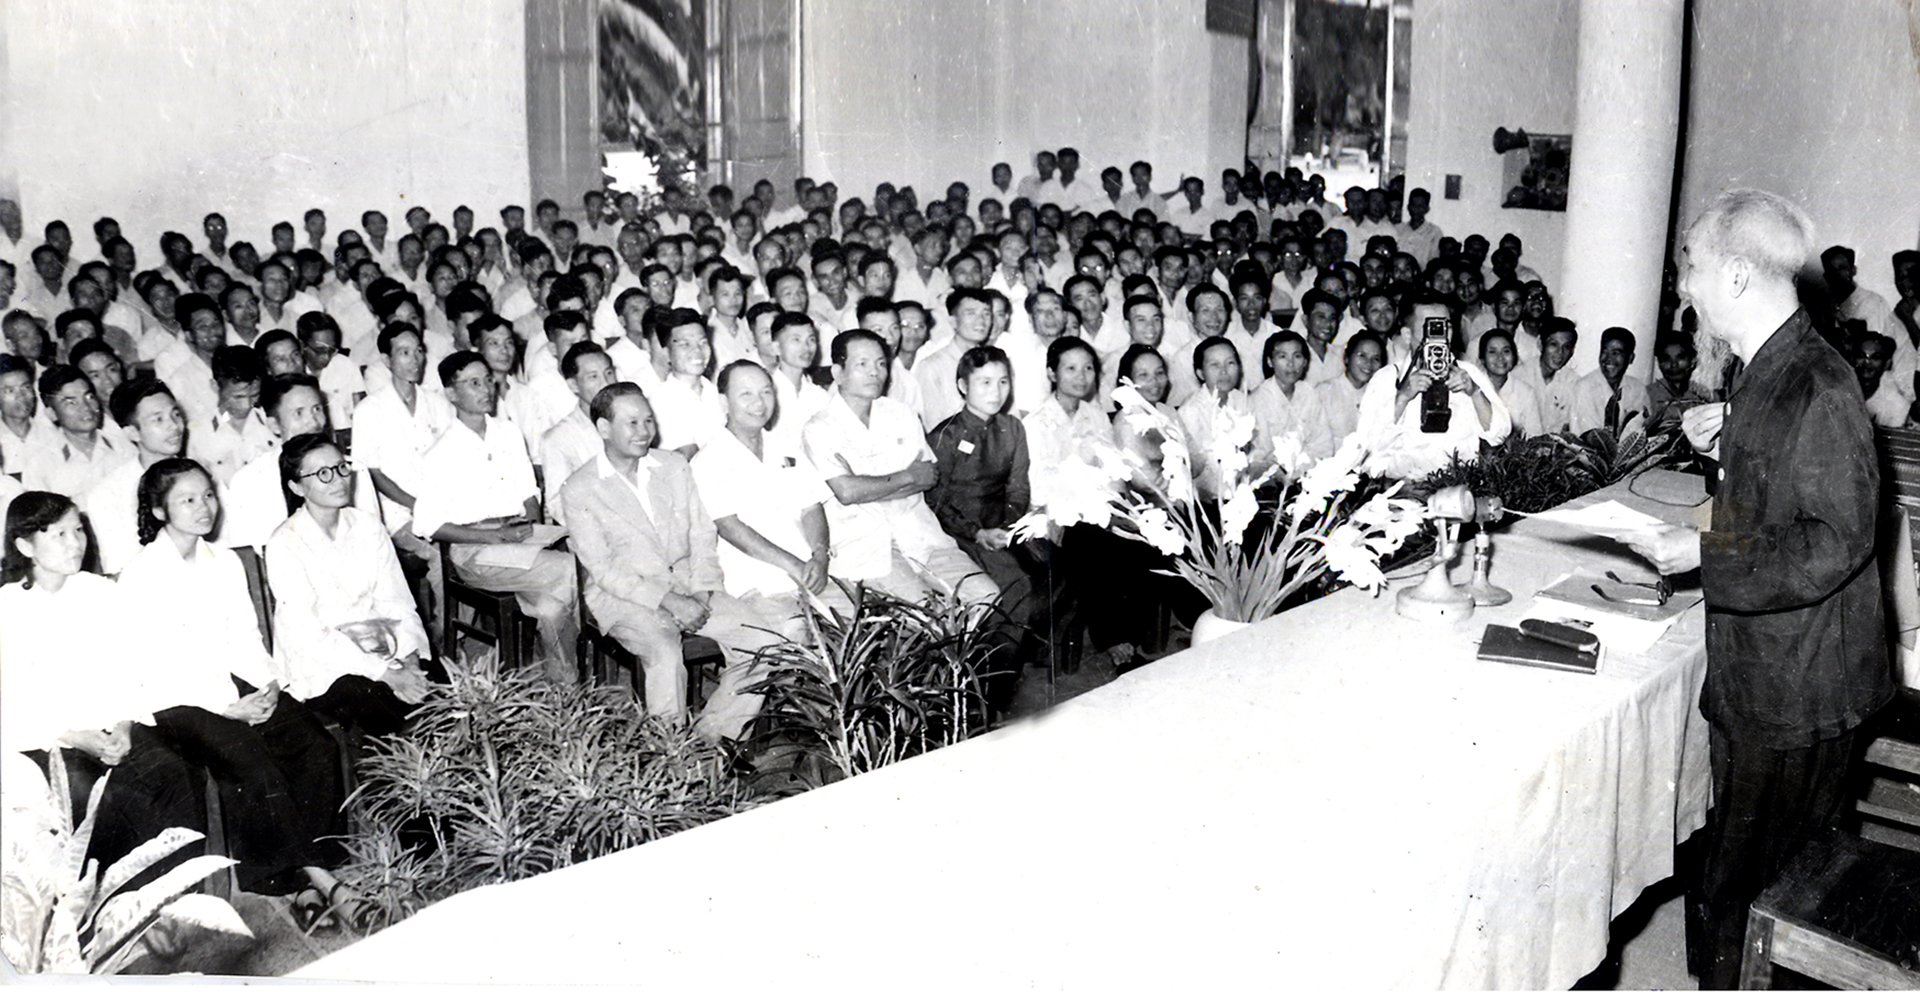 Tại Đại hội lần thứ III của Hội Nhà báo Việt Nam, Chủ tịch Hồ Chí Minh căn dặn: Cán bộ báo chí cũng là chiến sĩ cách mạng. Cây bút, trang giấy là vũ khí sắc bén (8/9/1962)_Ảnh tư liệu